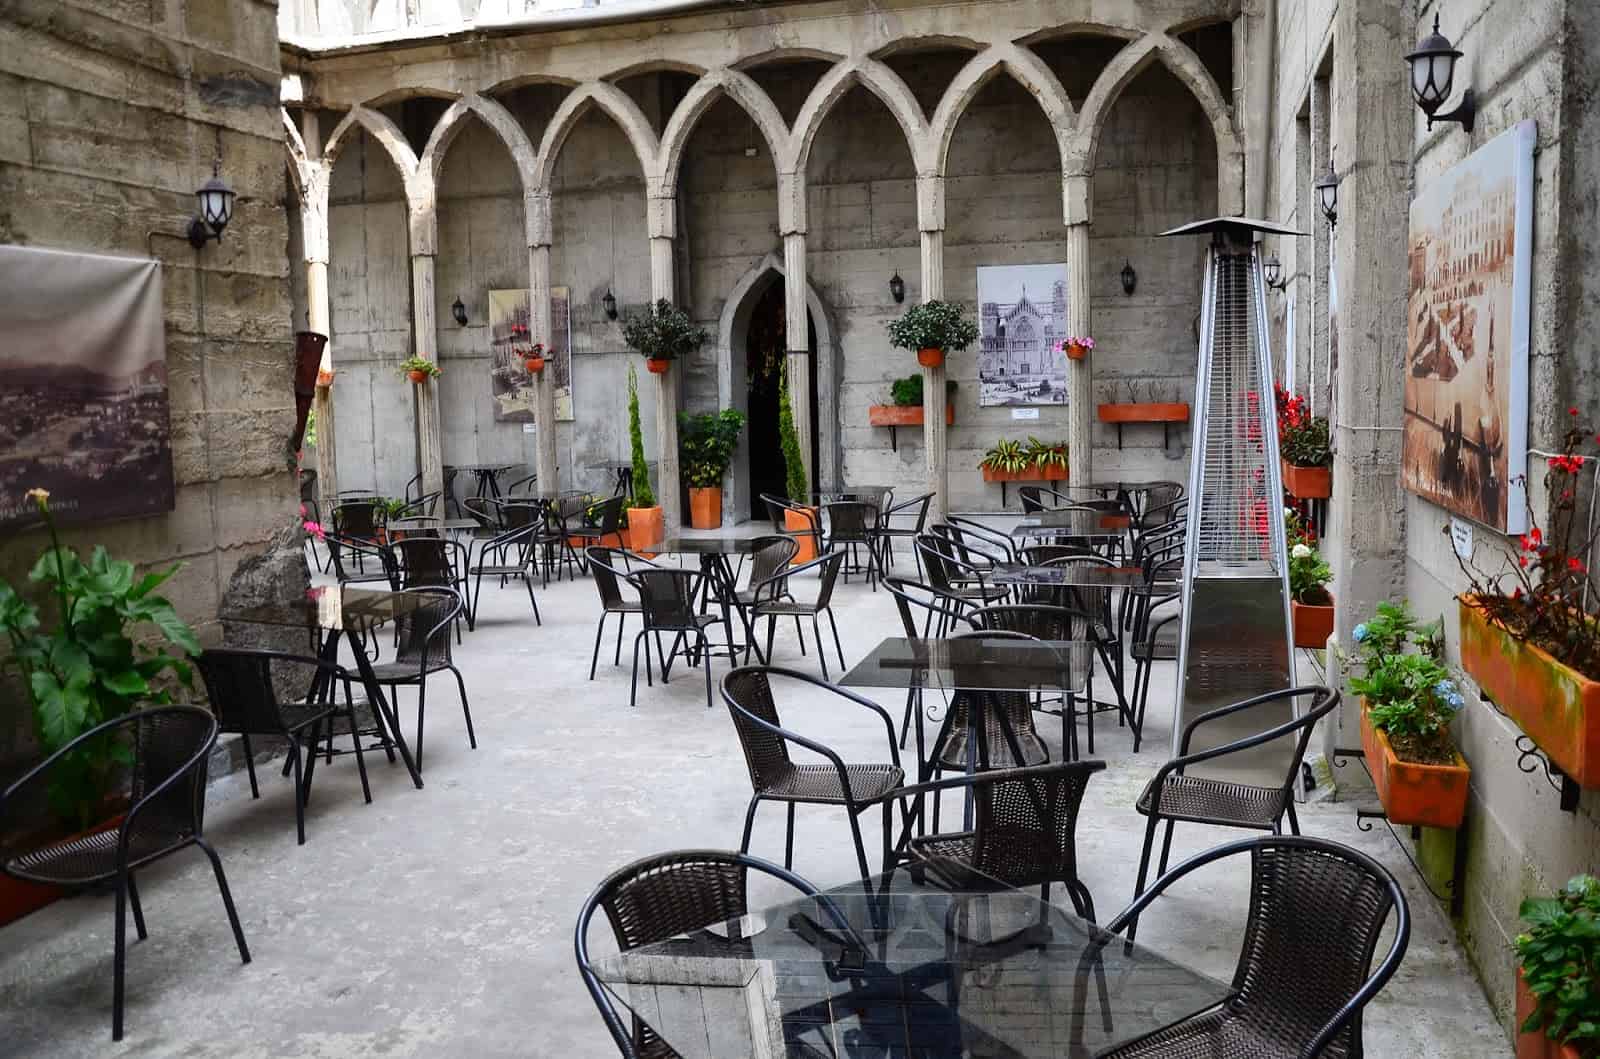 Tazzioli Café in Catedral de Manizales at Plaza de Bolívar in Manizales, Caldas, Colombia